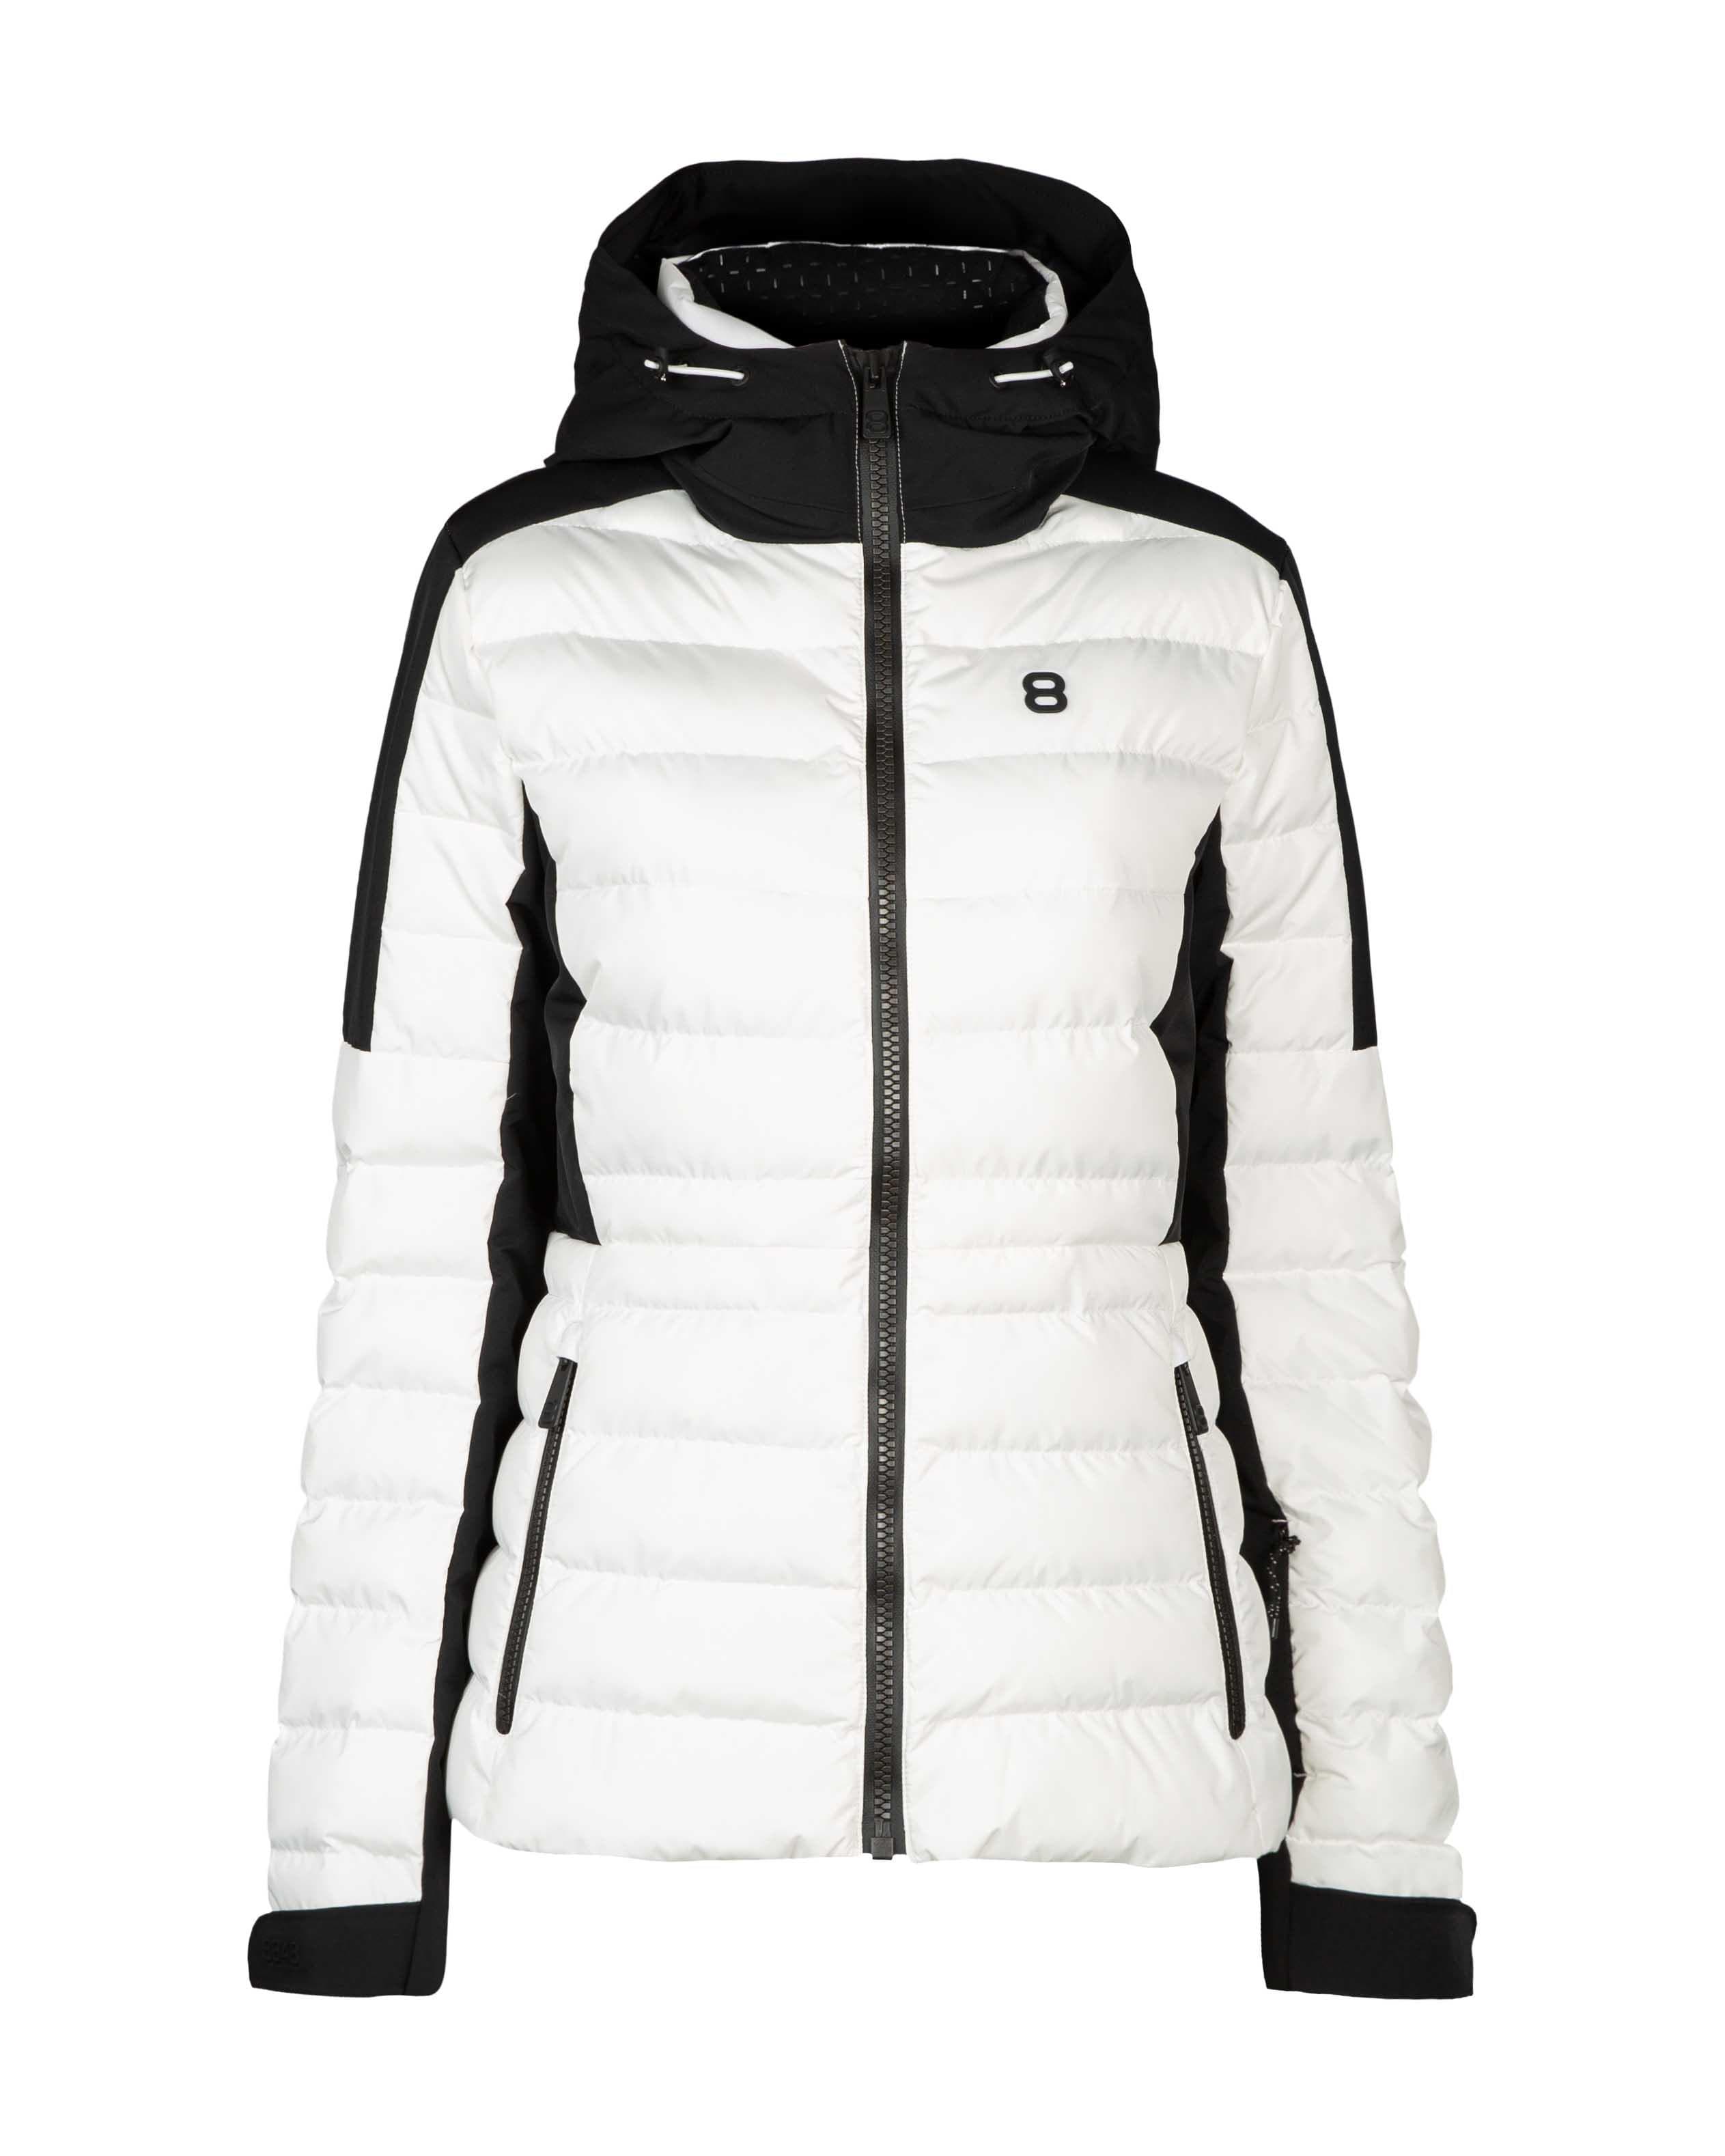 Anoesjka W Jacket Blanc - Weiße Ski Jacke Damen